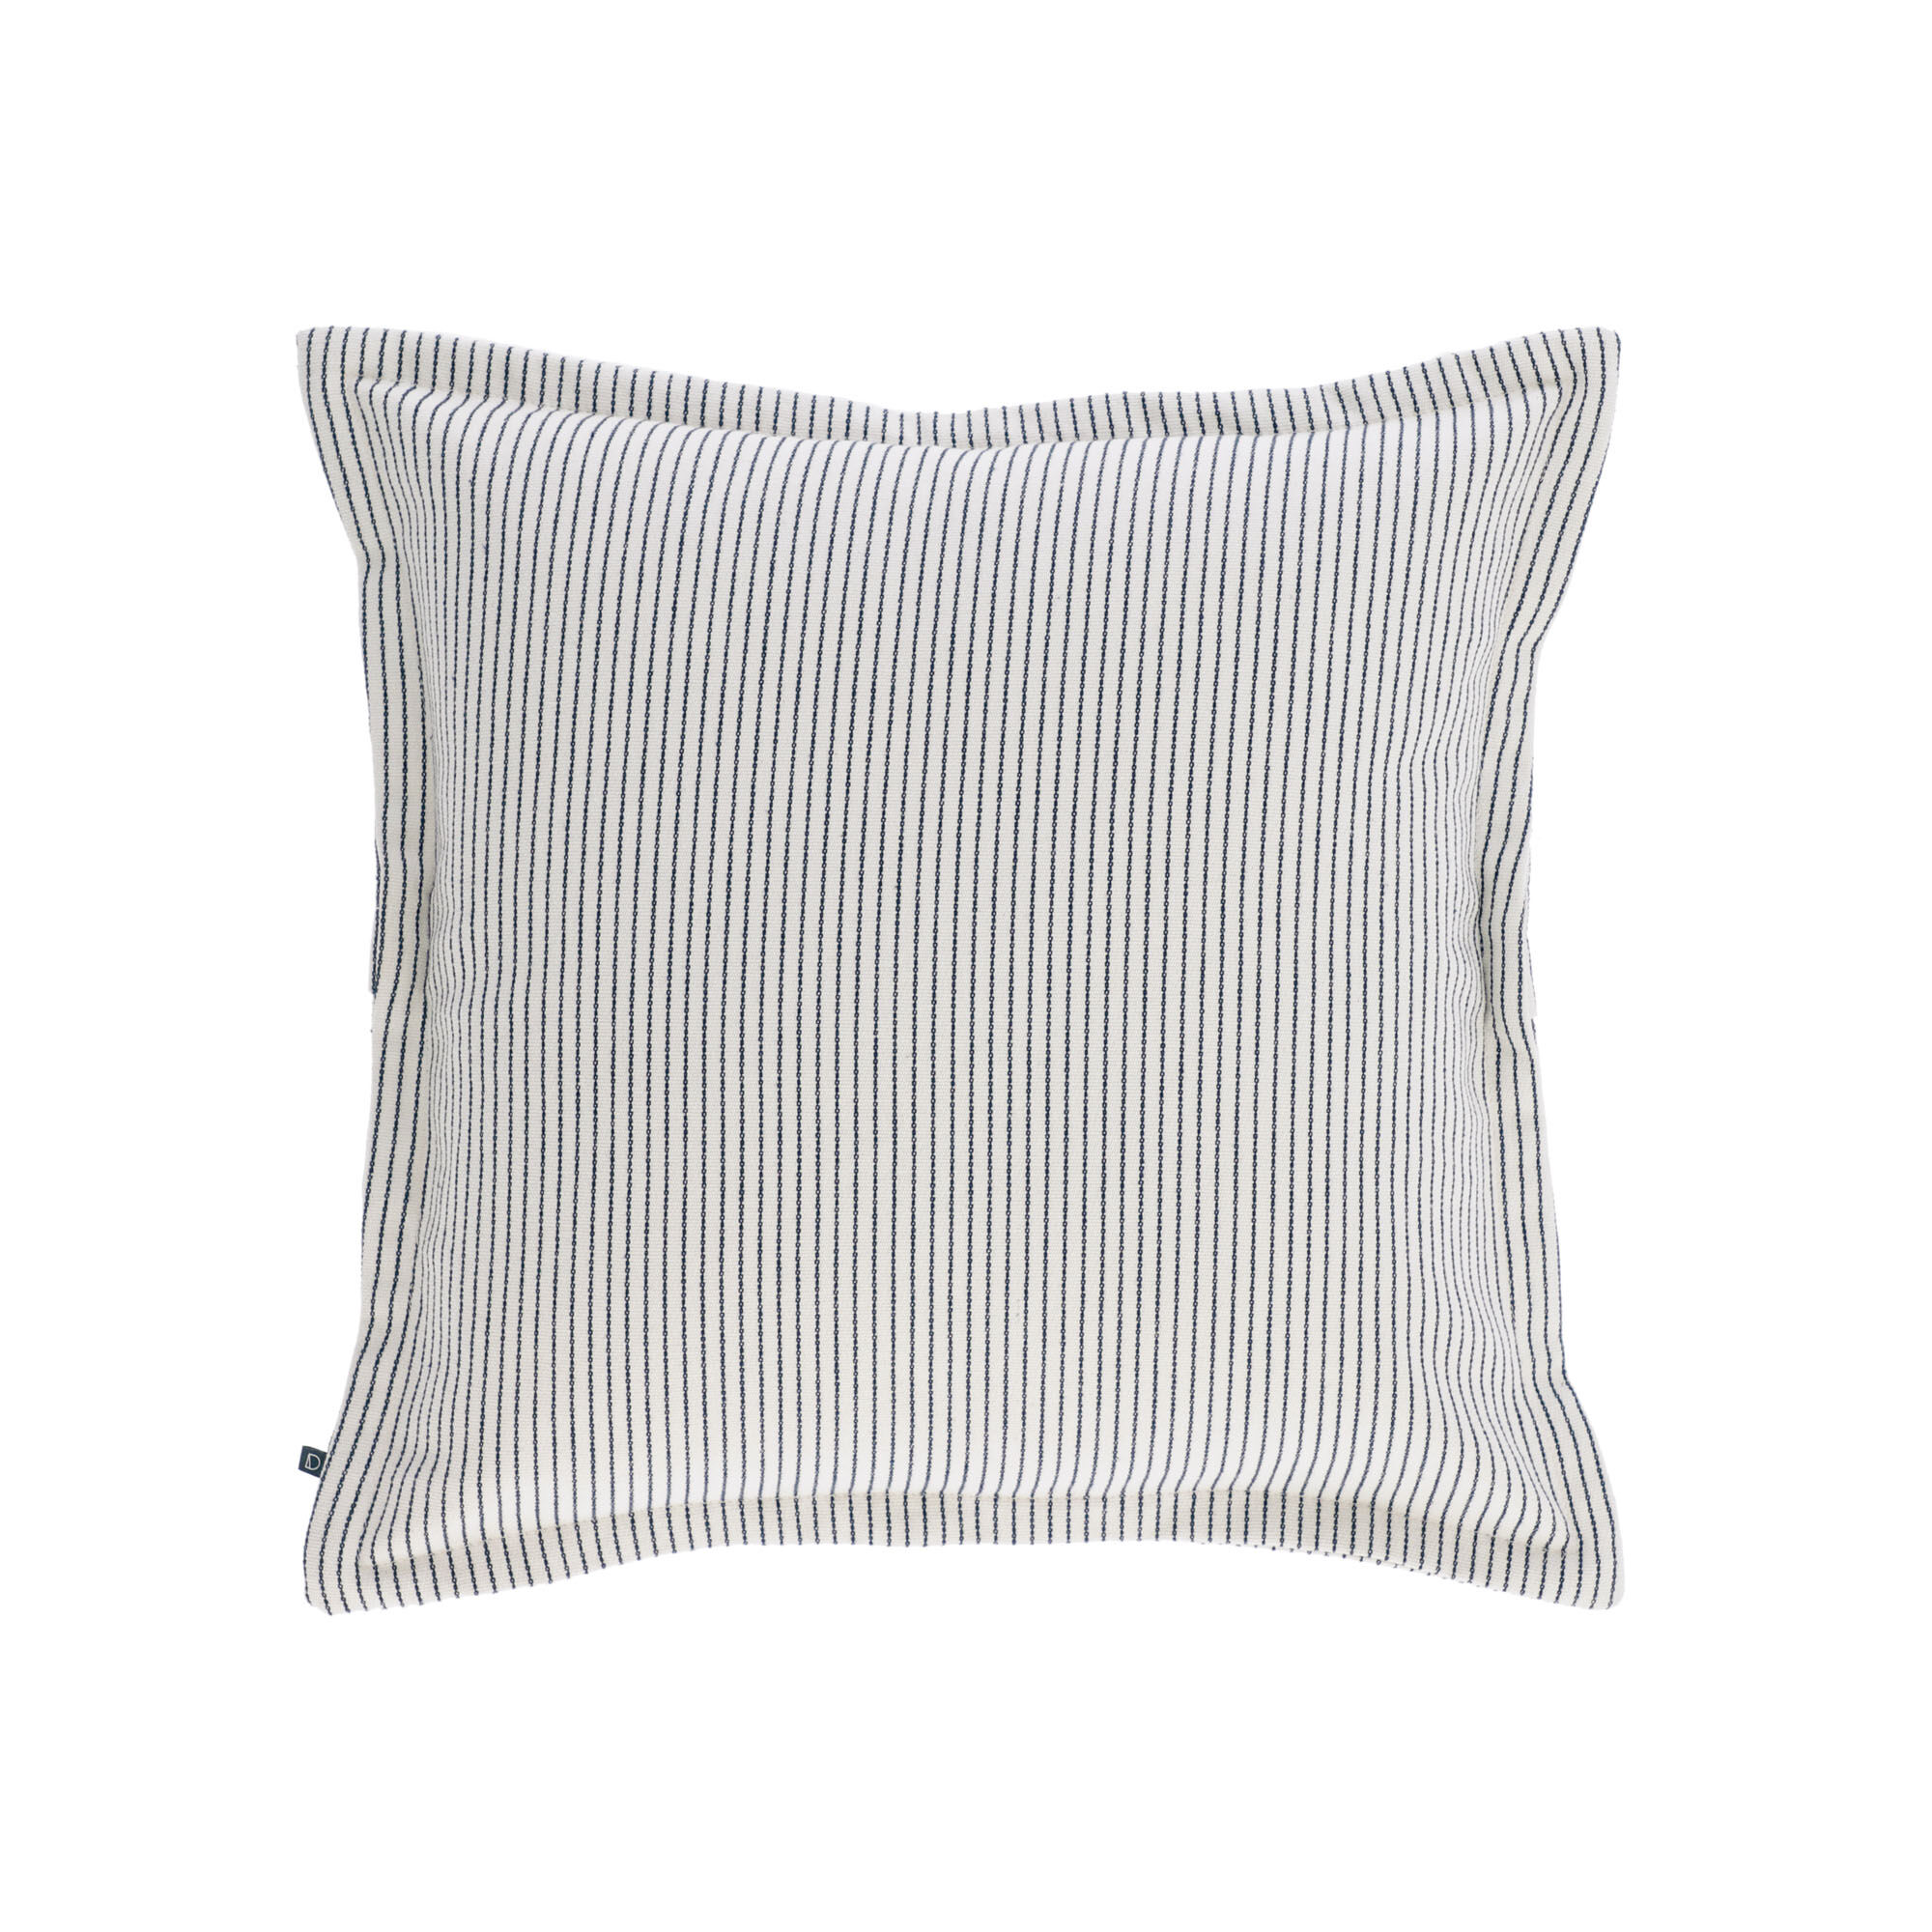 Kave Home Fodera per cuscino Aleria in cotone a righe grigio e bianco 45 x 45 cm